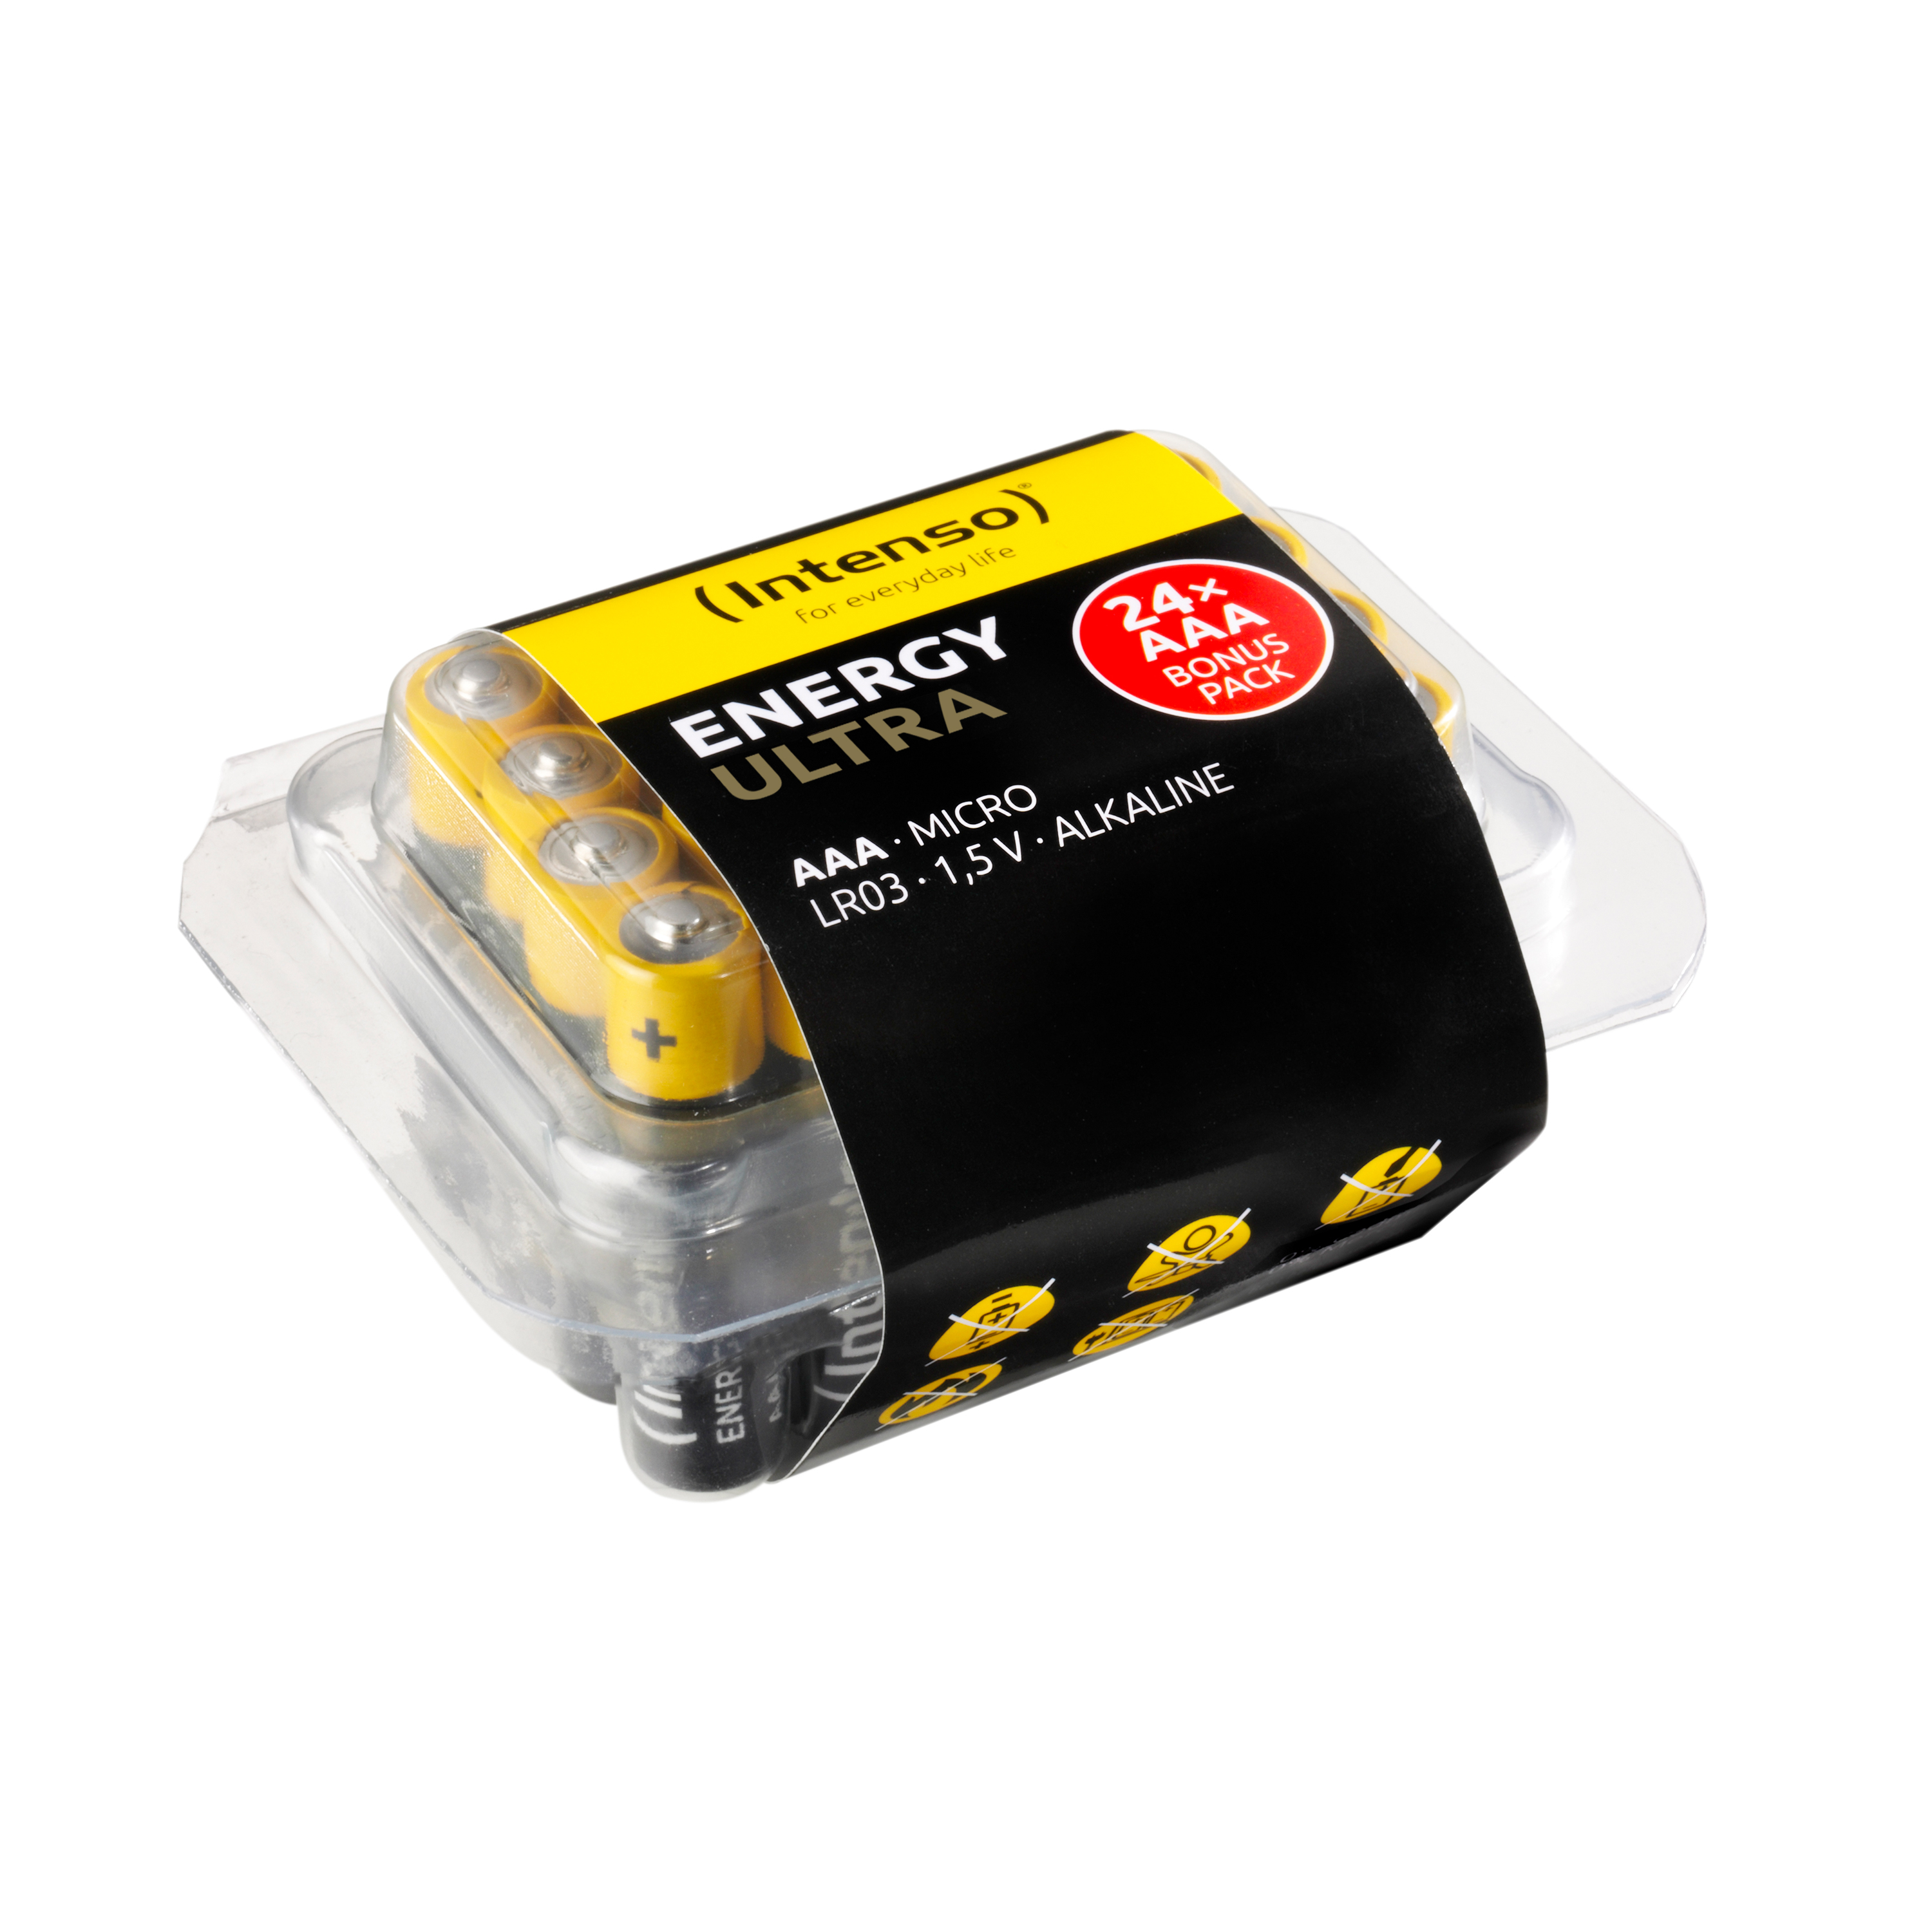 INTENSO Energy Ultra AAA Batterie Micro 24er AAA, Alkaline Manganese Pack (Quecksilberfrei), LR03, LR03